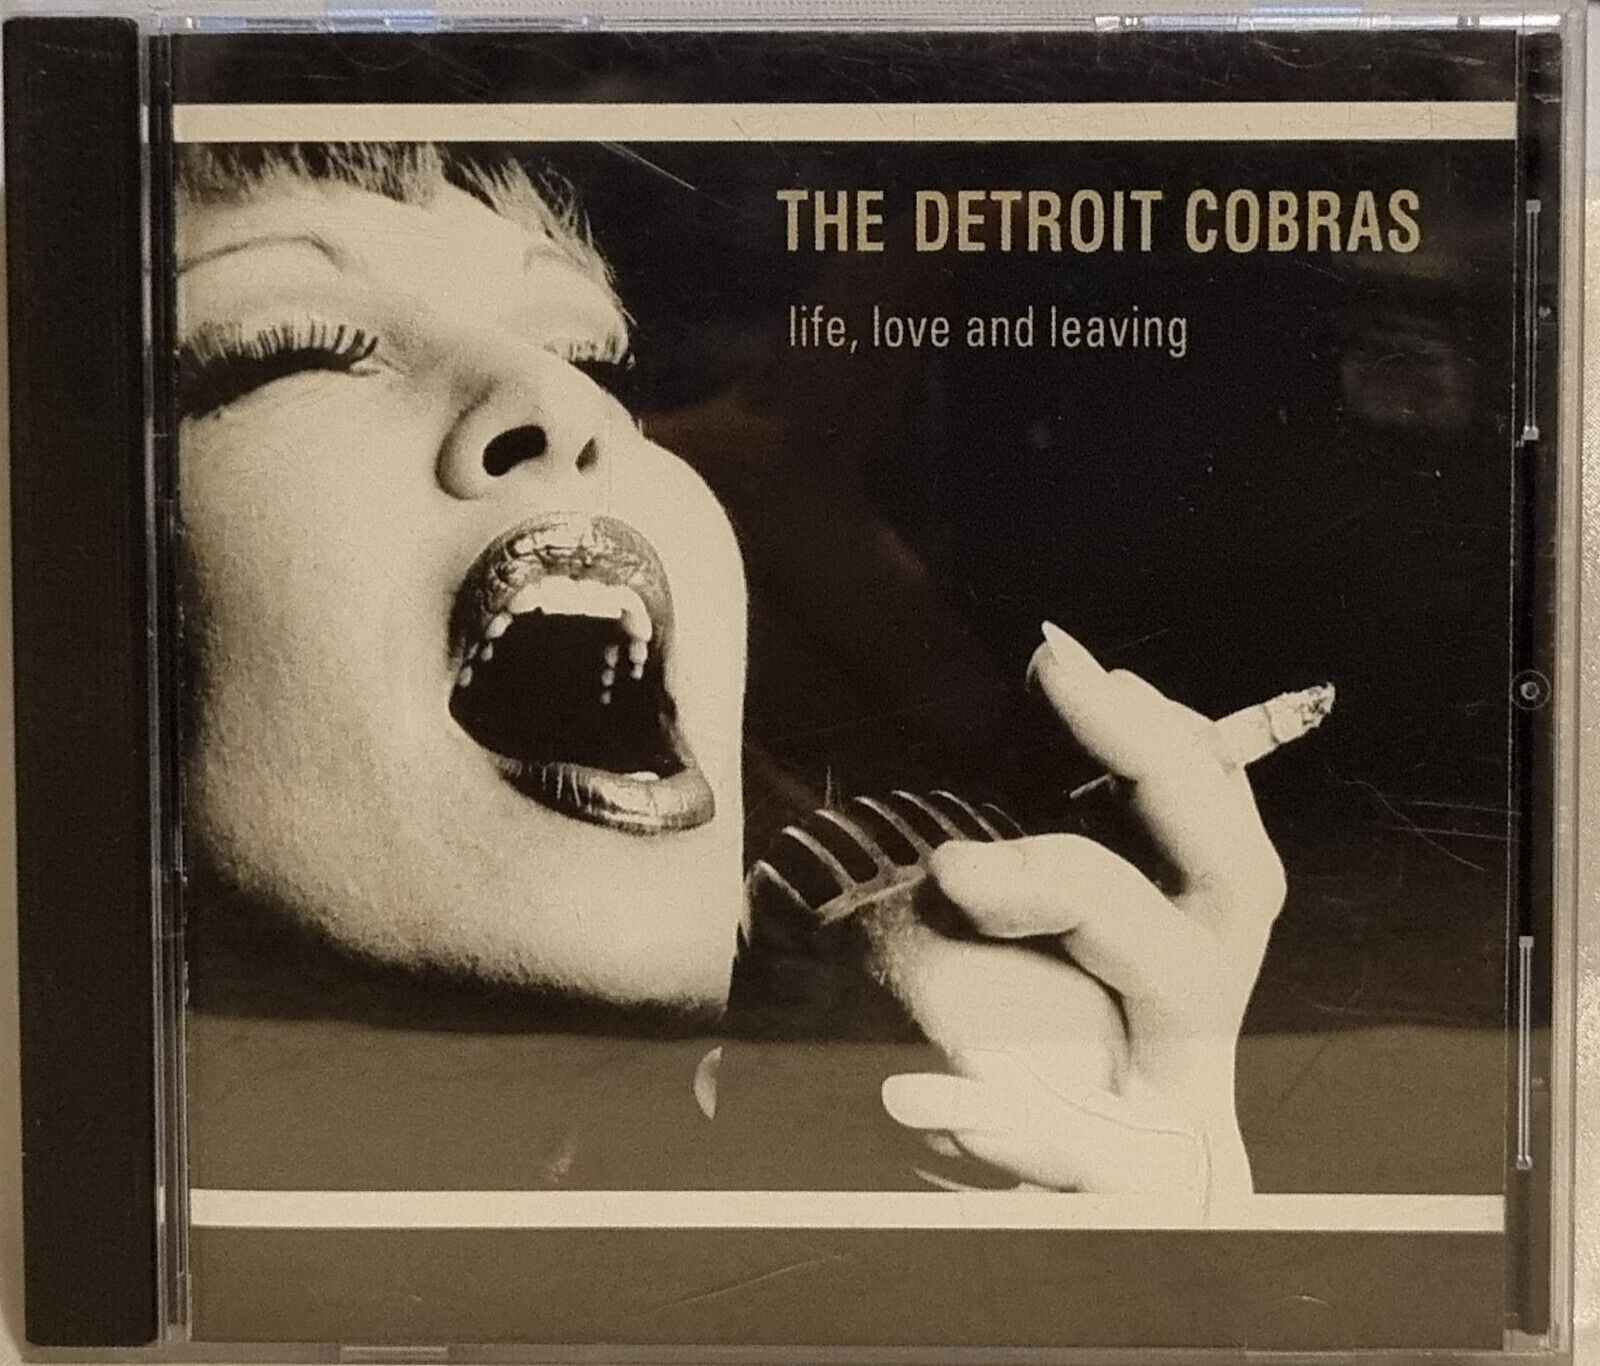 Detroit Cobras  "LIFE, LOVE & LEAVING" - 2001 14 track CD